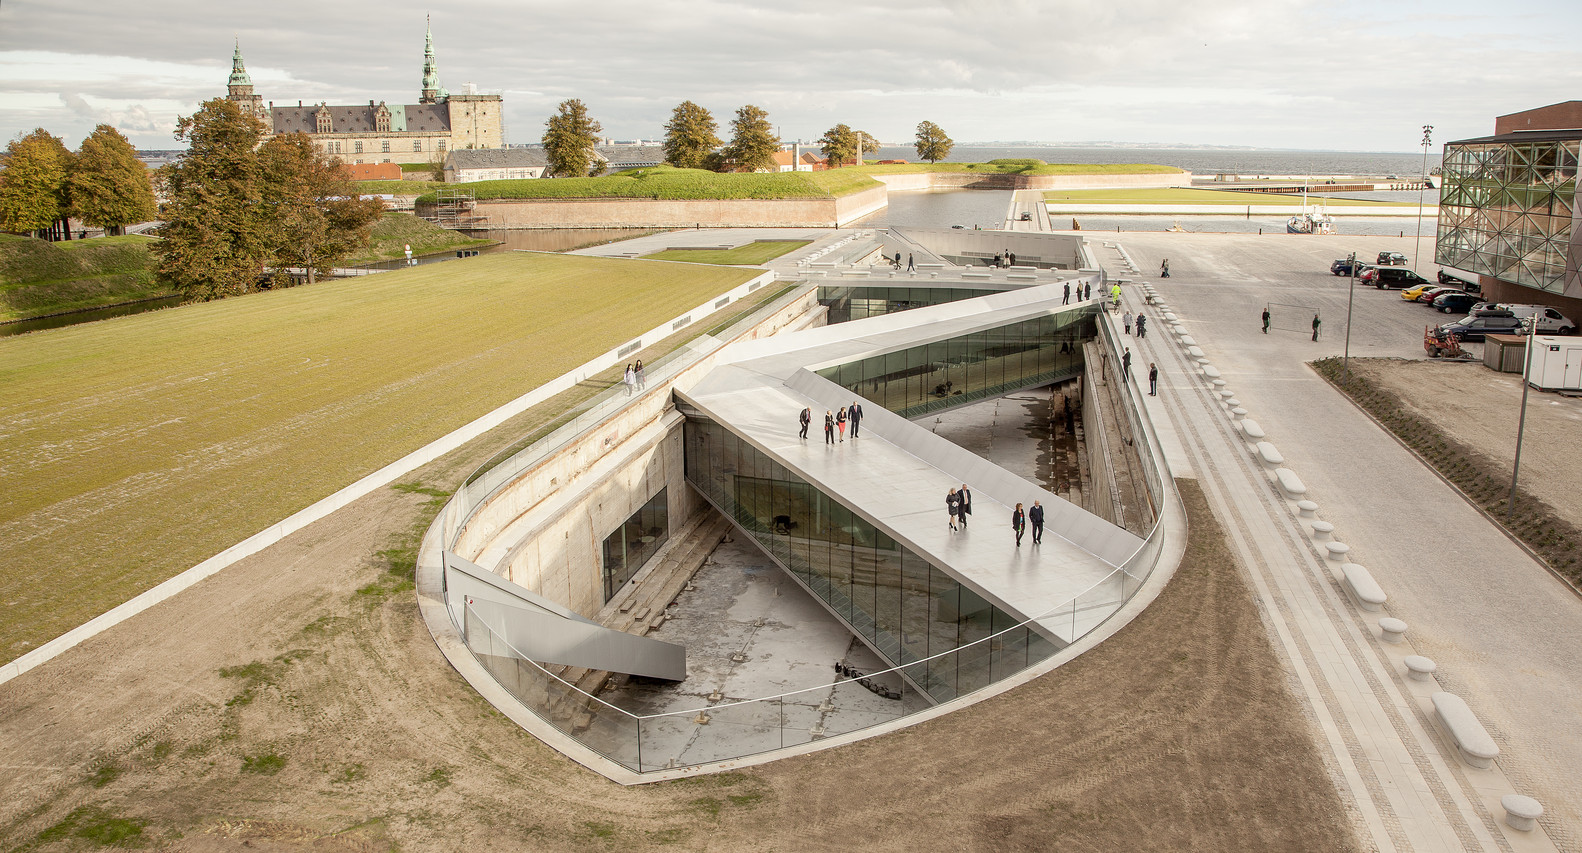 9553Danimarka Ulusal Deniz Müzesi’nde Açılan Sergi, B. Ingels Tarafından Tasarlanan Müze Yapısının Tasarım ve Yapım Sürecini Anlatıyor